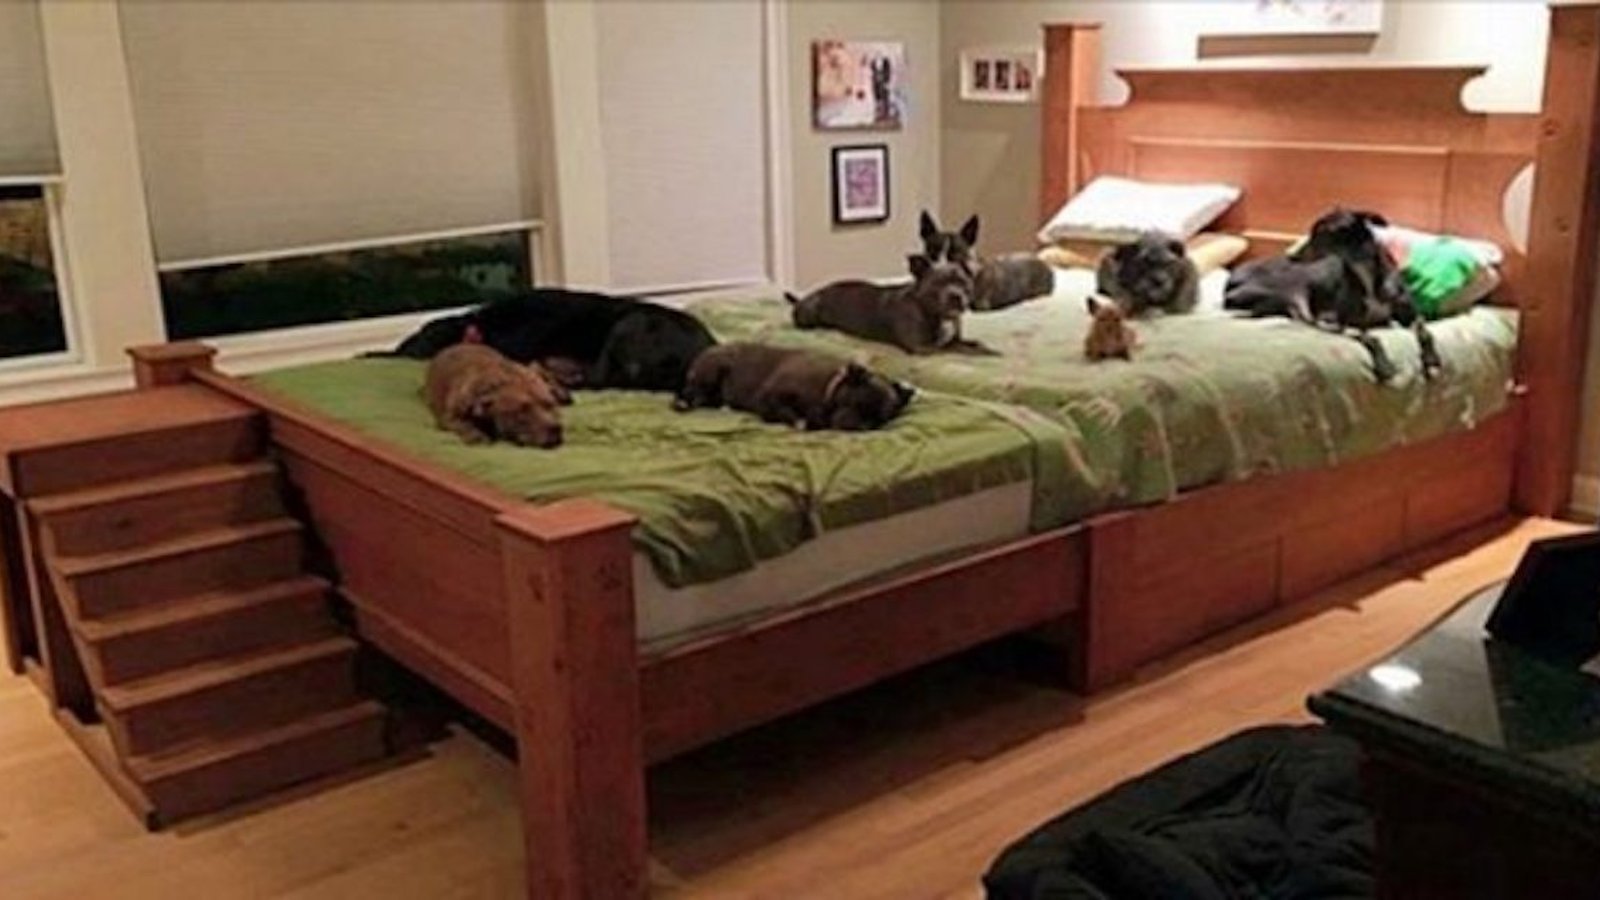 Un couple construit un lit géant pour pouvoir dormir avec tout les animaux qu’il a sauvés